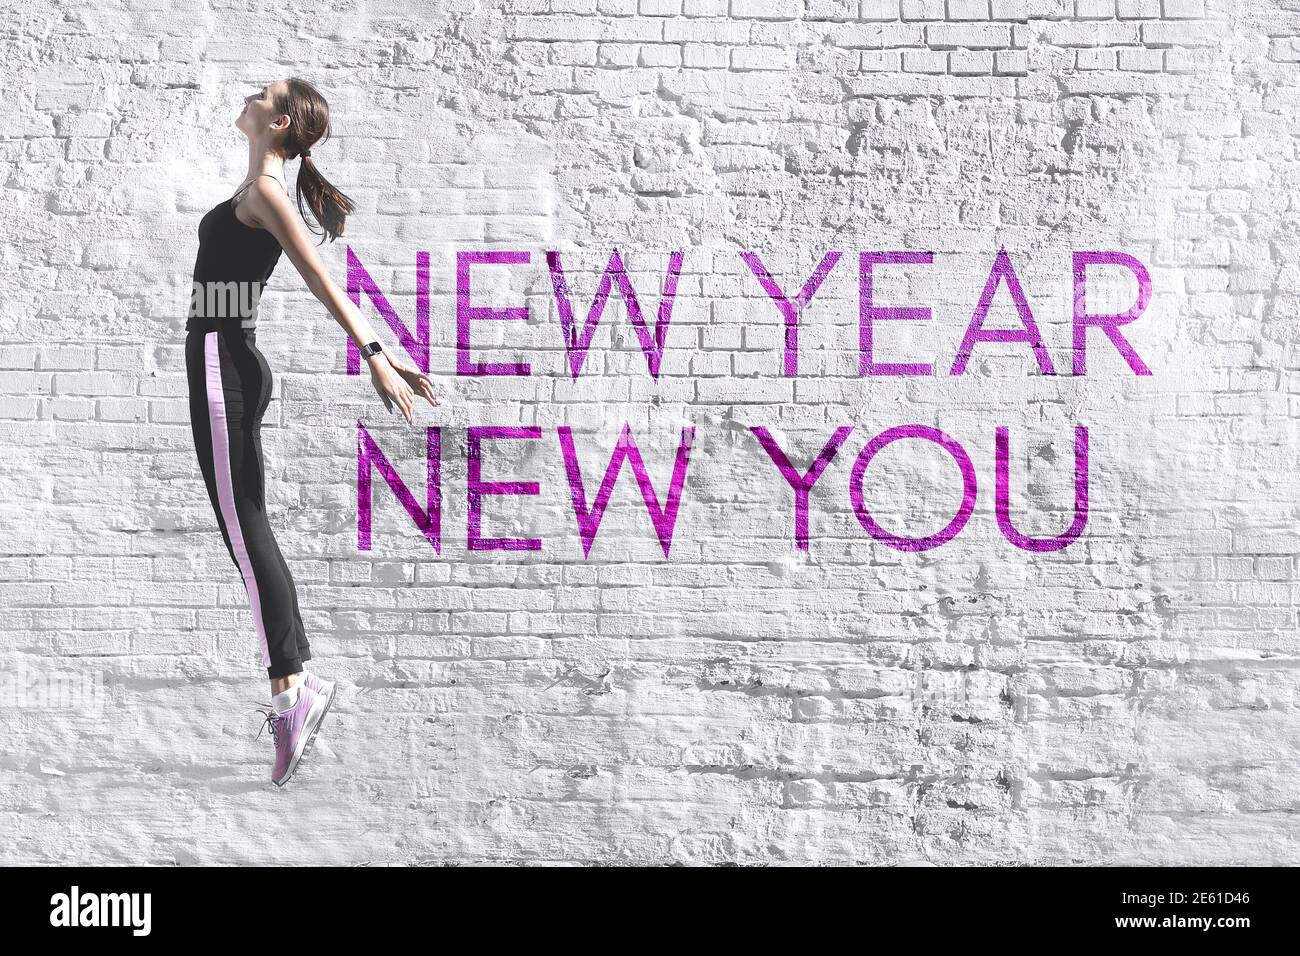 New Year New You - citazione motivazionale ispirata sotto forma di graffiti sullo sfondo di un vecchio muro di mattoni bianchi. Foto di alta qualità Foto Stock